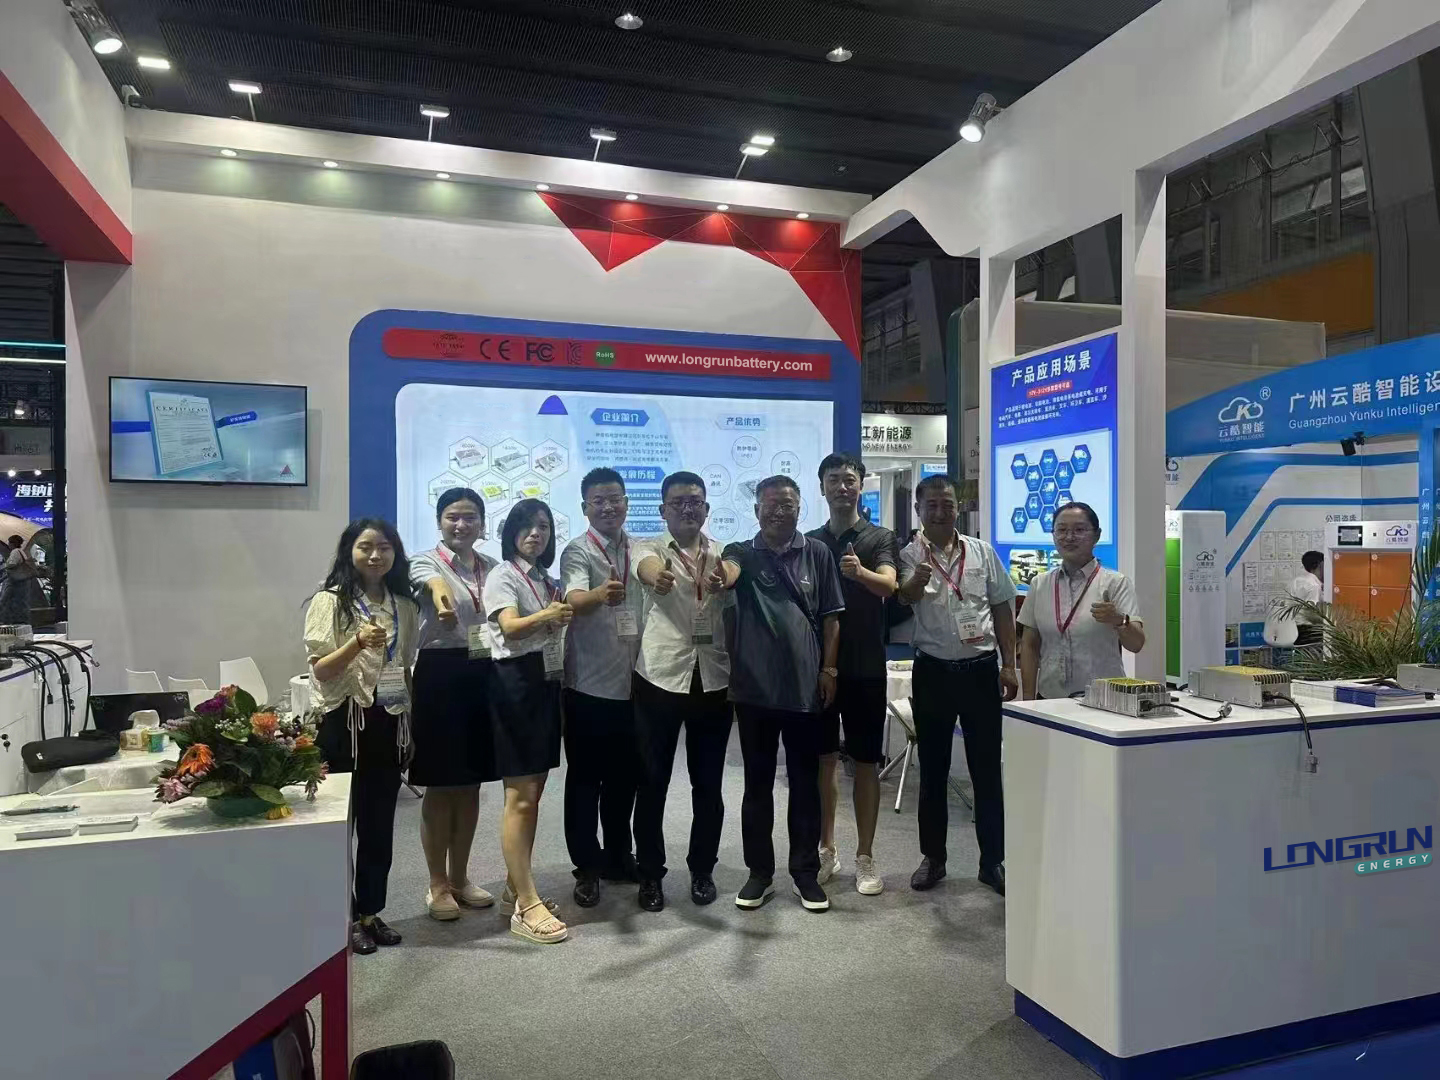 La mostra Guangzhou Asia Pacific Battery ha invitato la mia azienda a partecipare